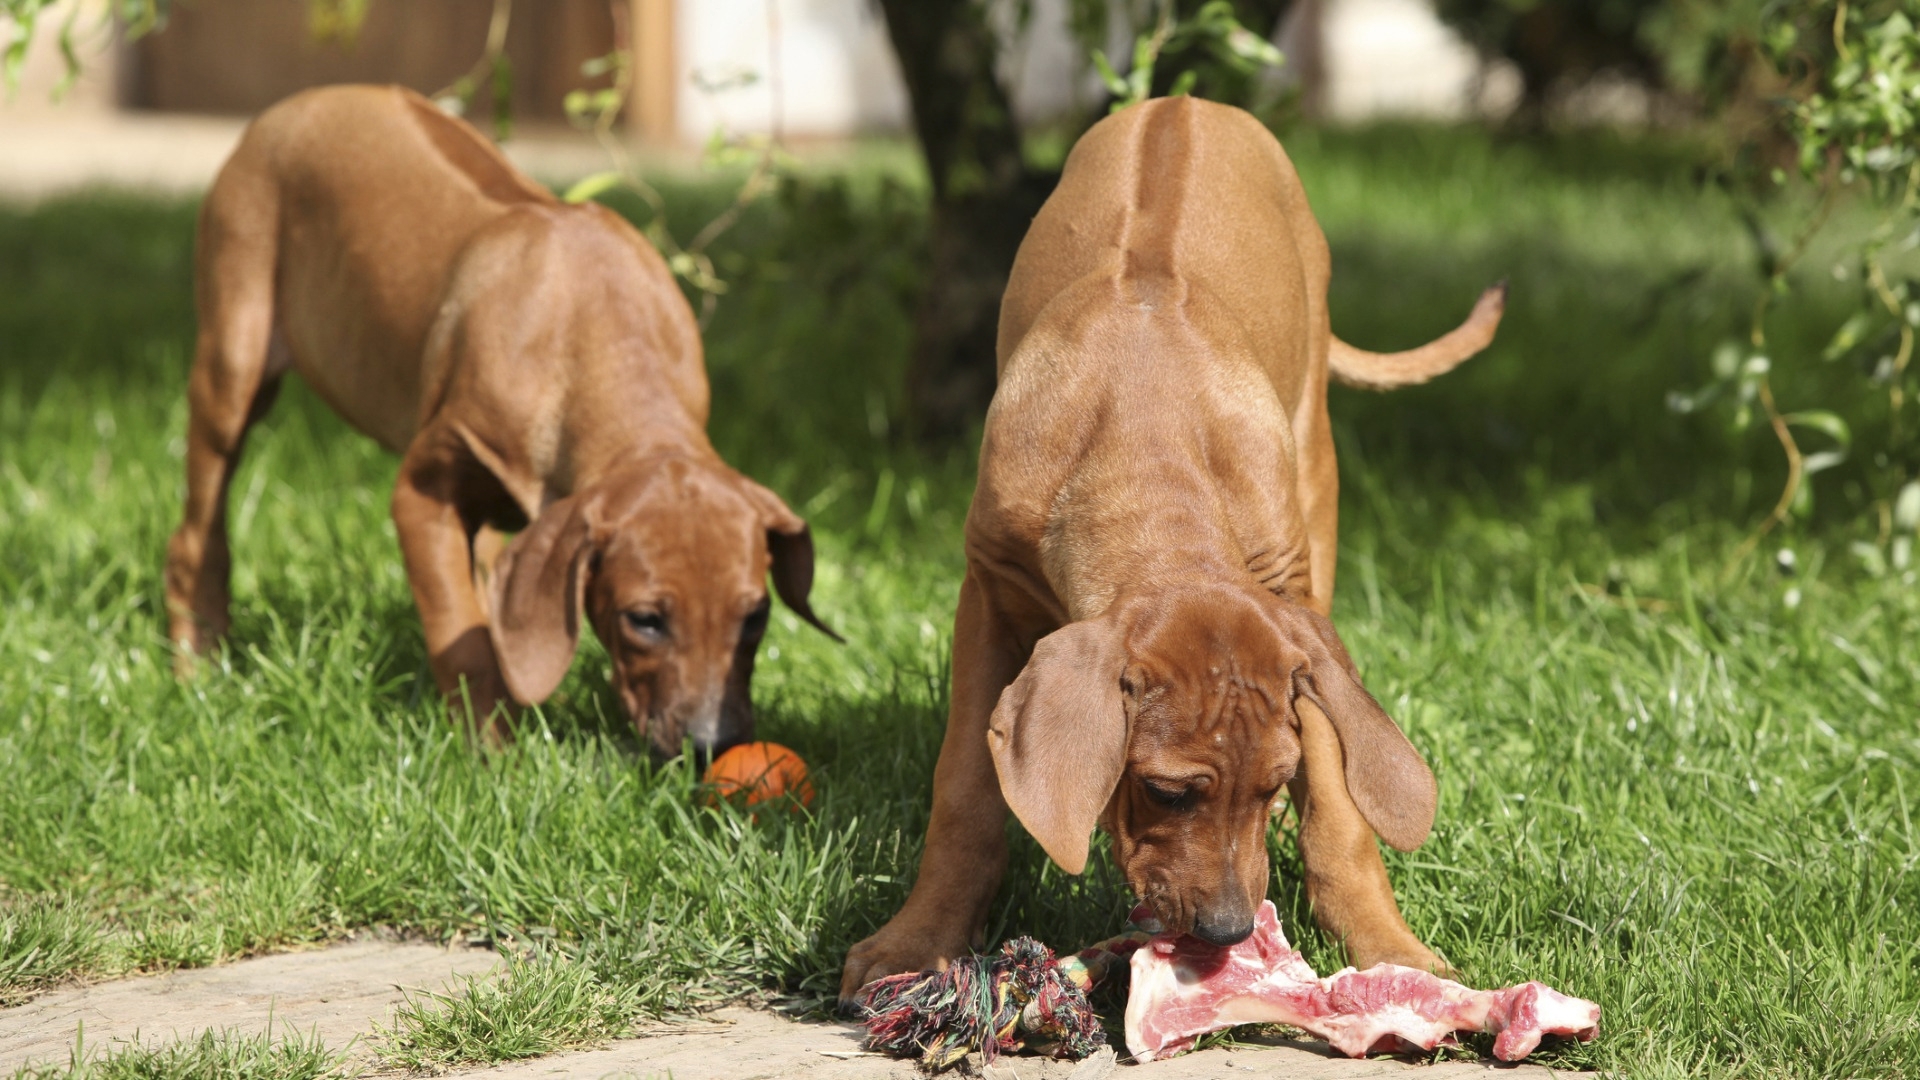 Tutkimuksen mukaan emän ja pentujen raakaruokinnalla oli yhteys vähäisempiin atopiaoireisiin, kun pennut kasviovat aikuisiksi. Koirien atopia voi siis jäädä kehittymättä raakaruokinnan ansiosta.